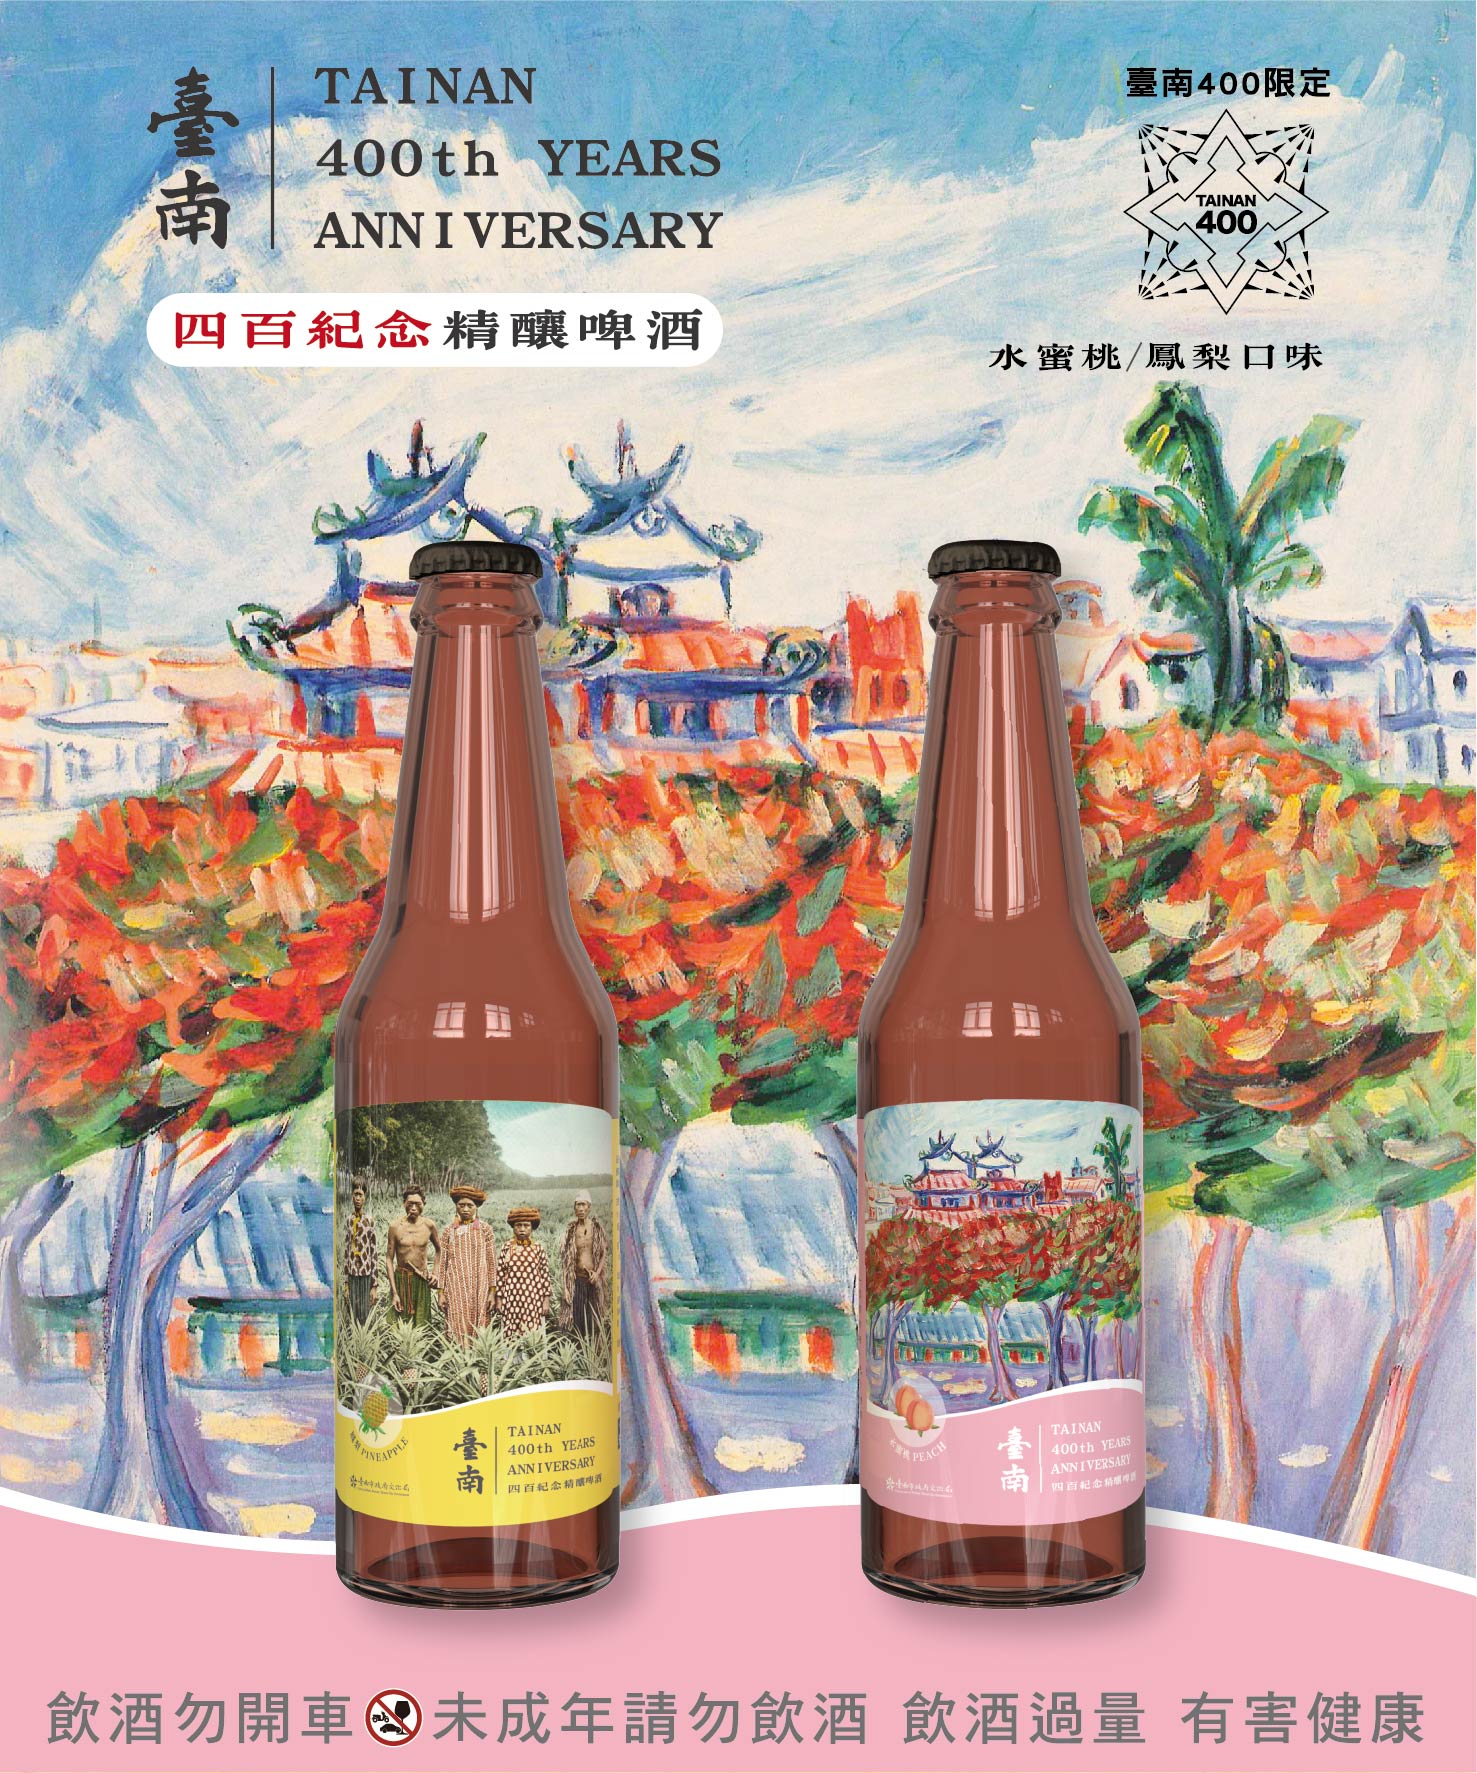 古蹟限定 臺南400紀念精釀啤酒 首發上市